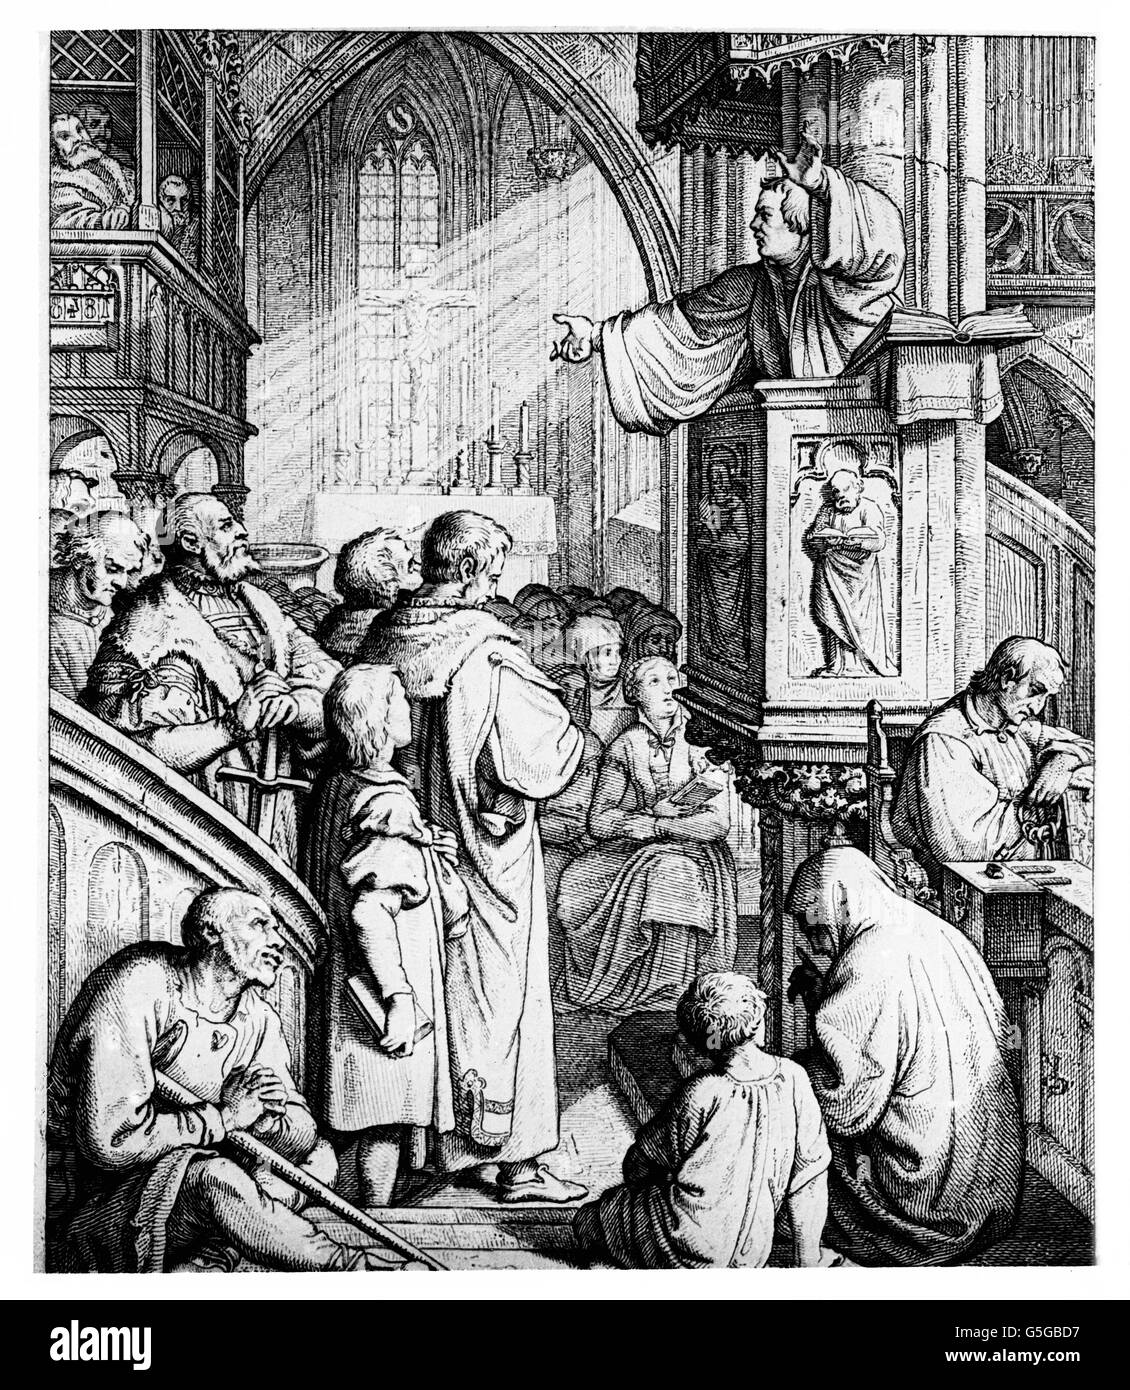 Martin Luther bei einer Predigt von der Kanzel zur Gemeinde. Martin Luther delivering a sermon from his pulpit to the community. Stock Photo